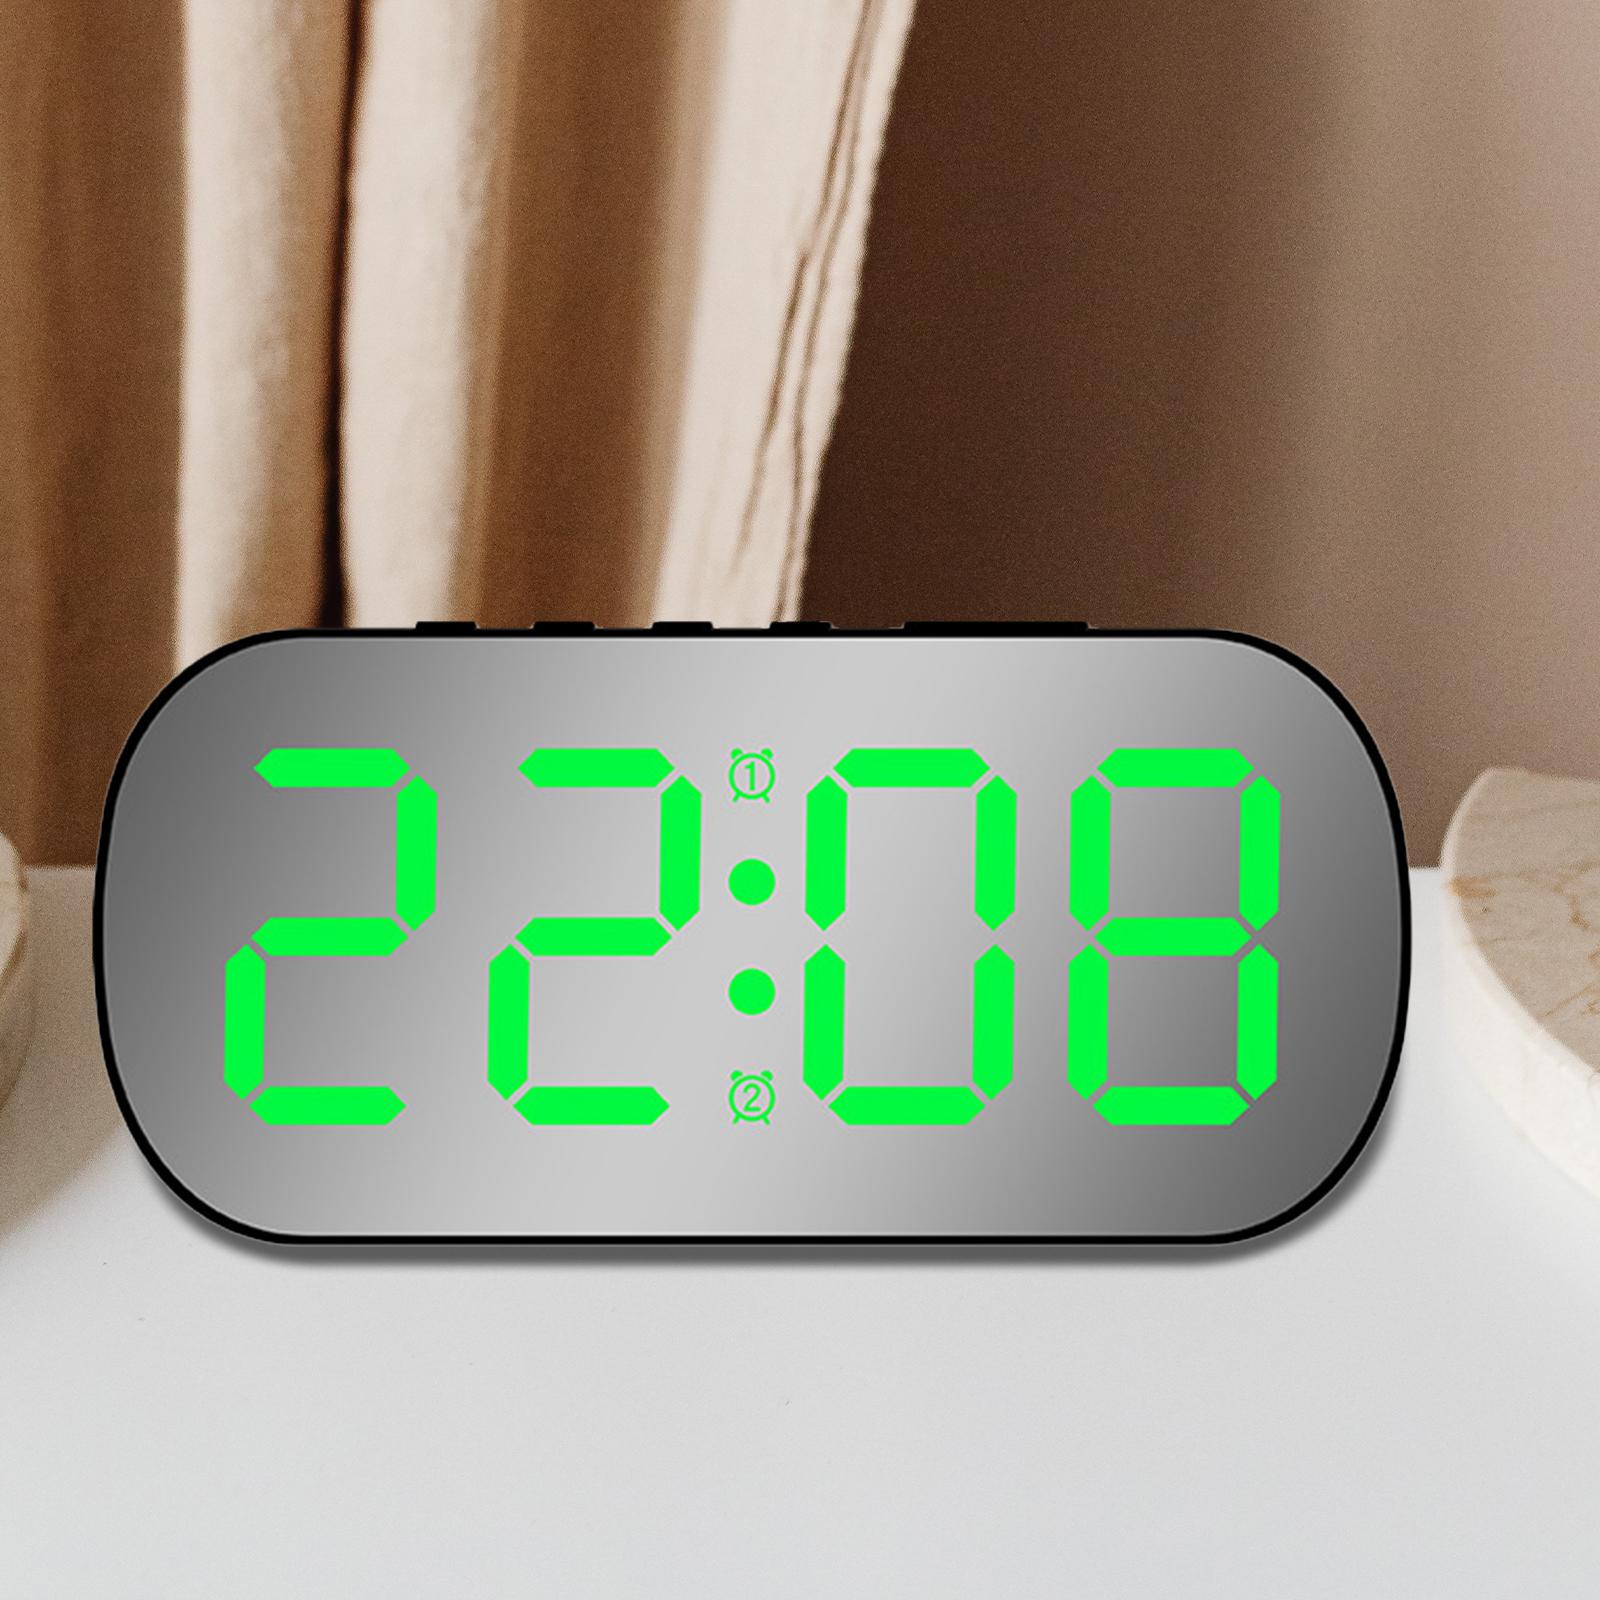 Digital Alarm Clock Mirrored Large Display 5 Adjustable Brightness LED Clock Black Green LED